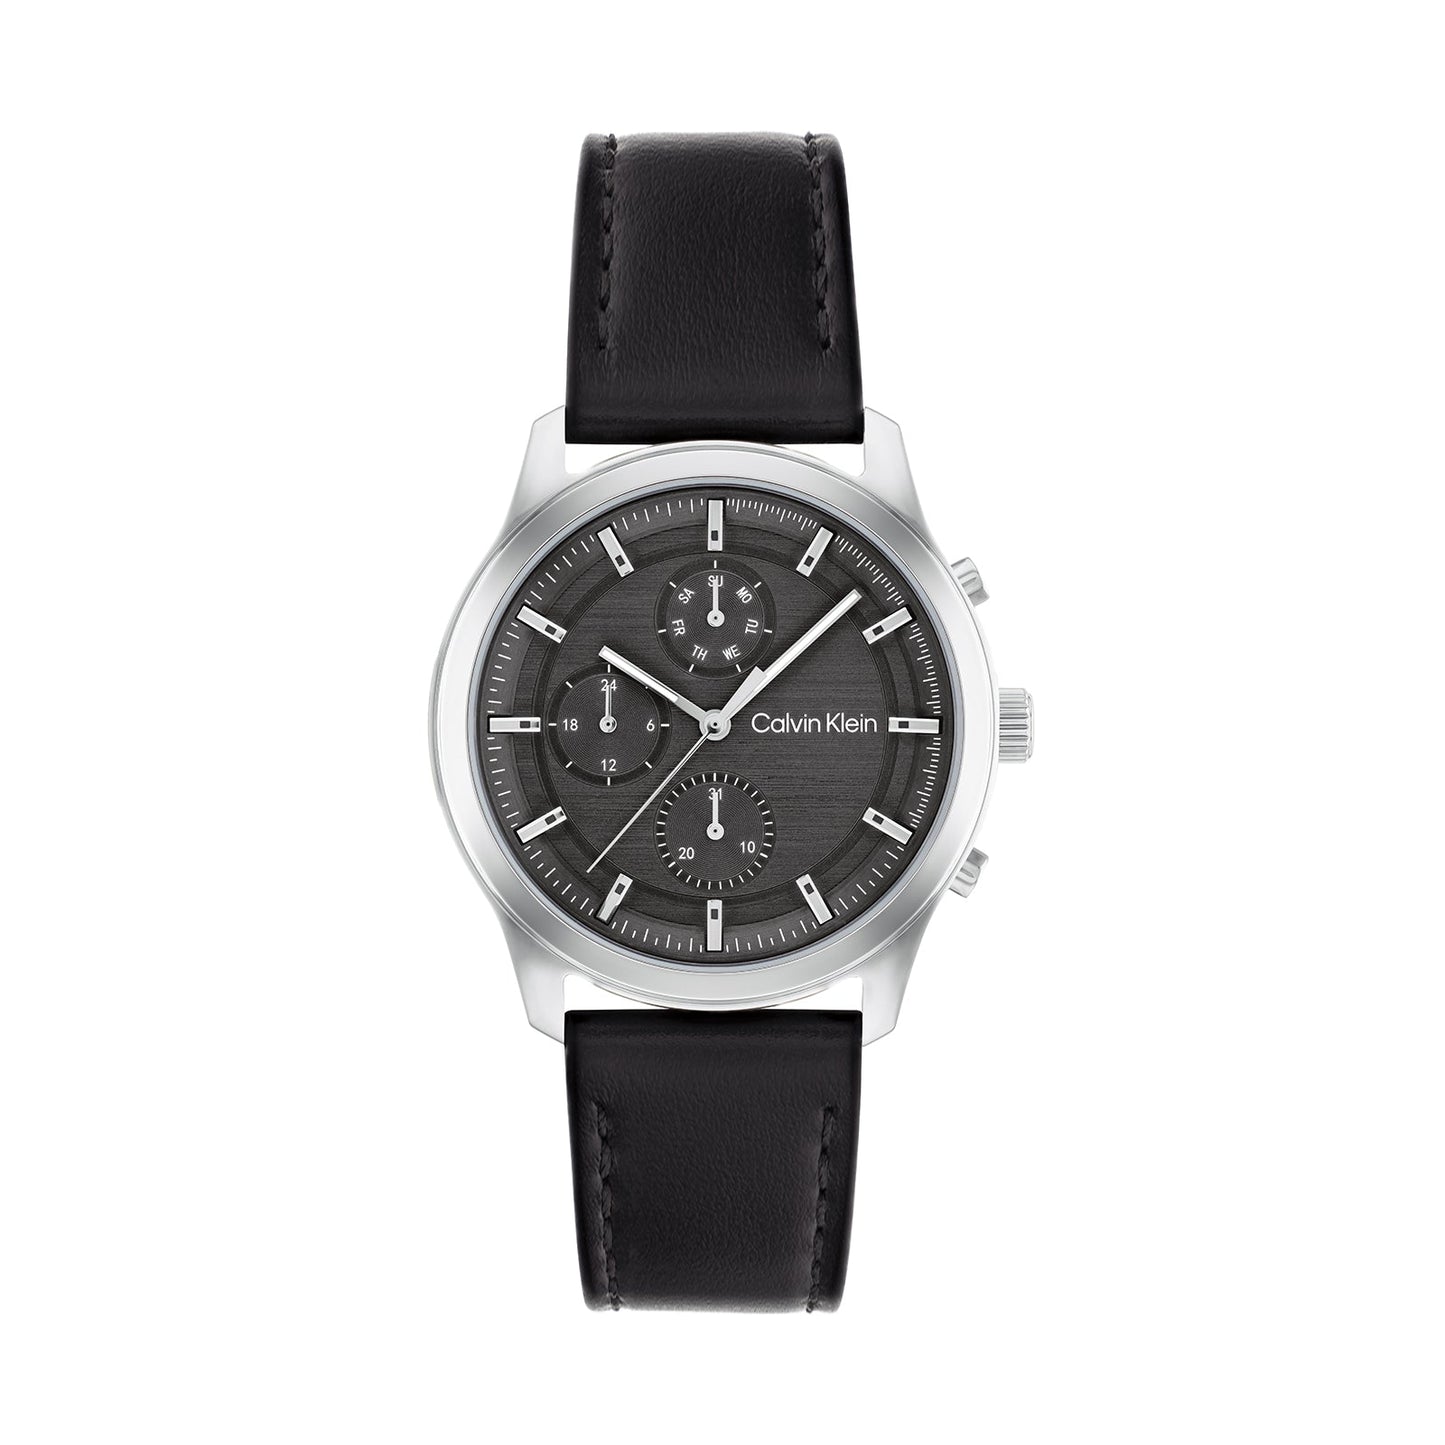 Calvin Klein 25200211 Men's Leather Watch